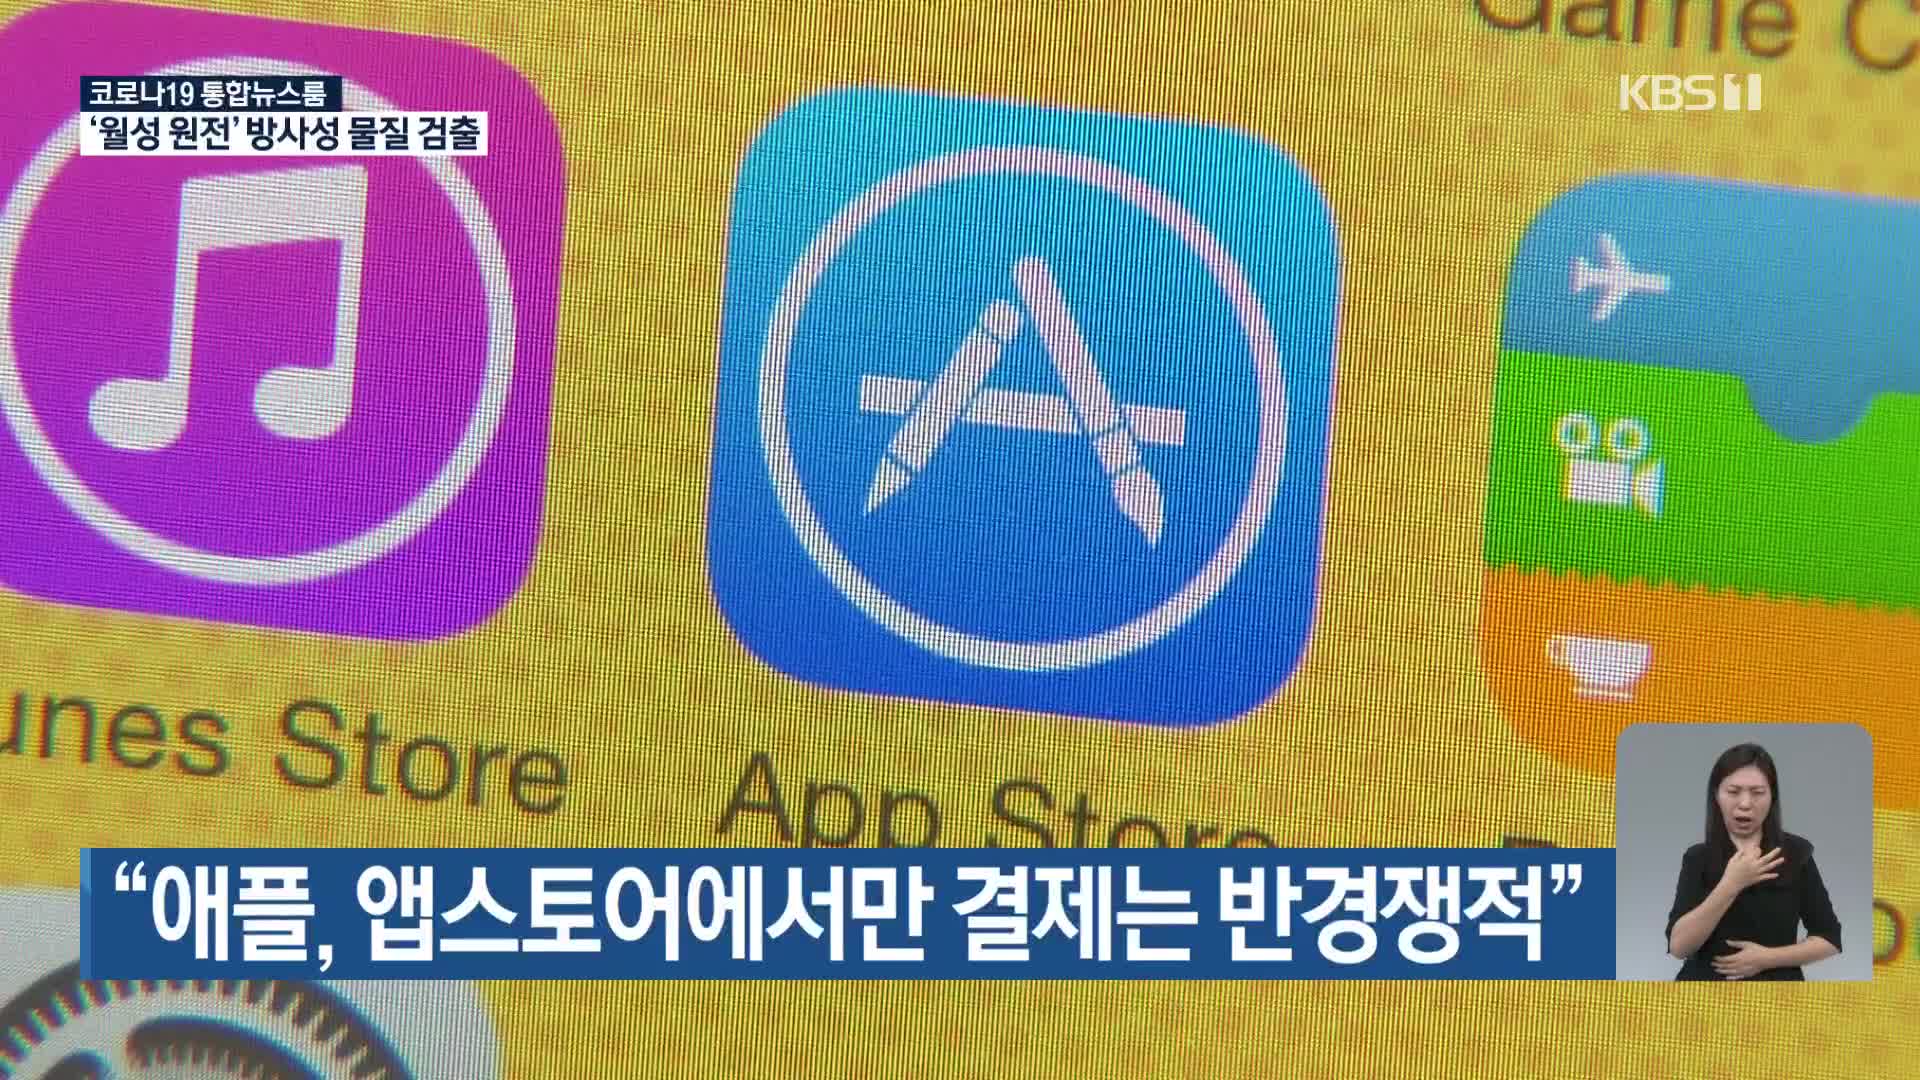 “애플, 앱스토어에서만 결제는 반경쟁적”